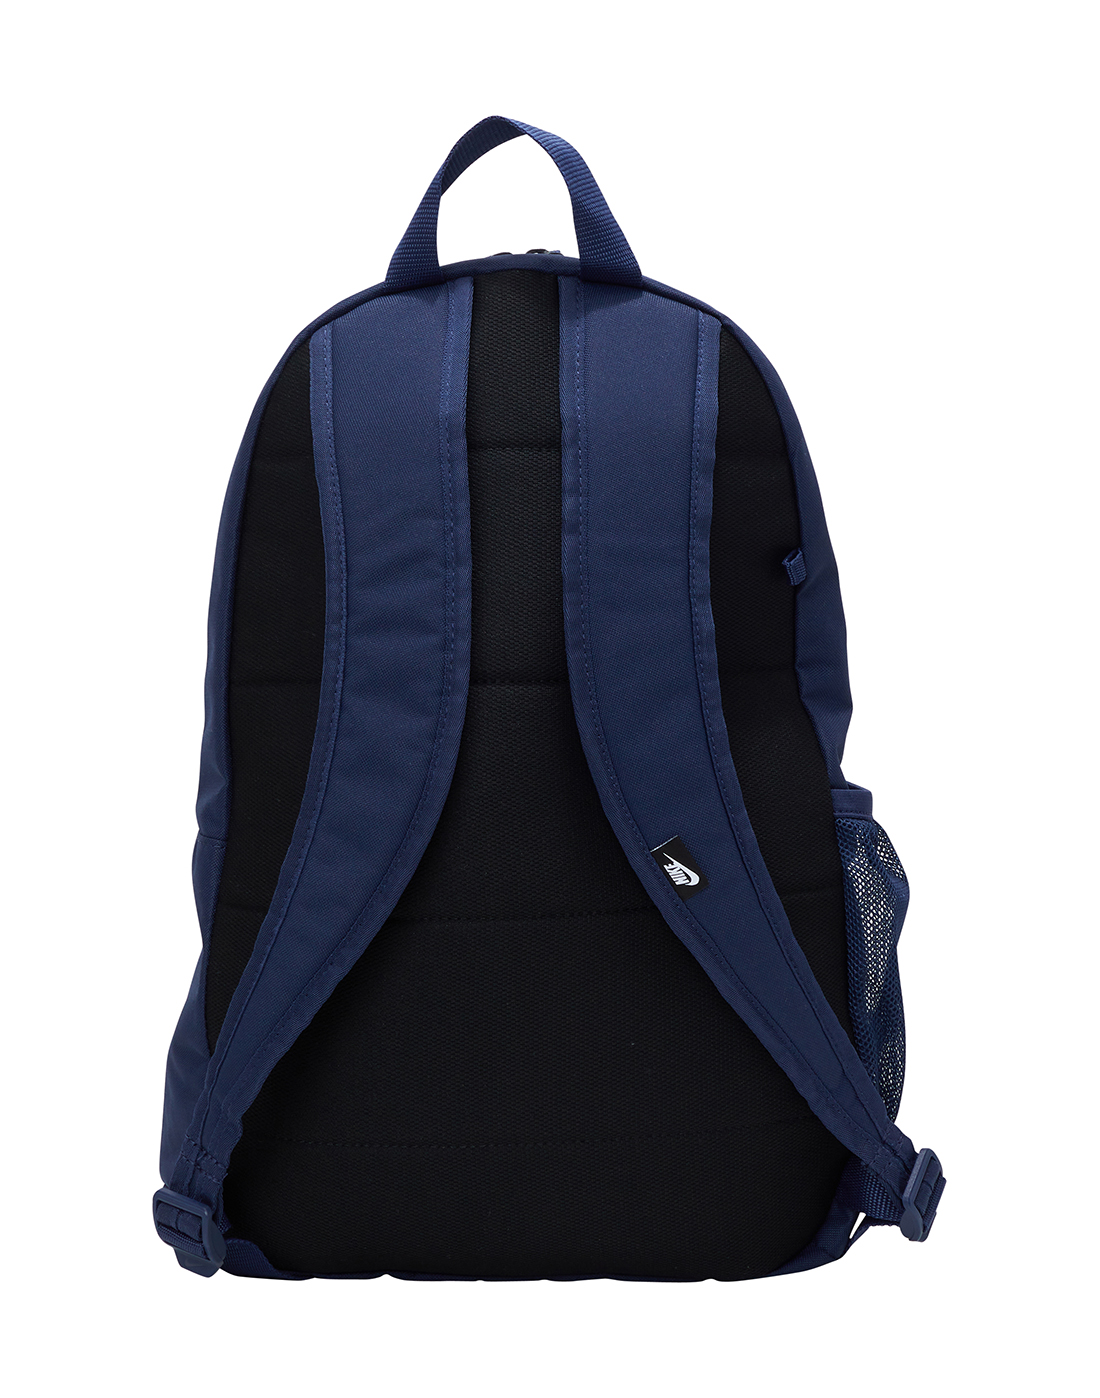 Nike Elemental Backpack - Navy | Life Style Sports UK